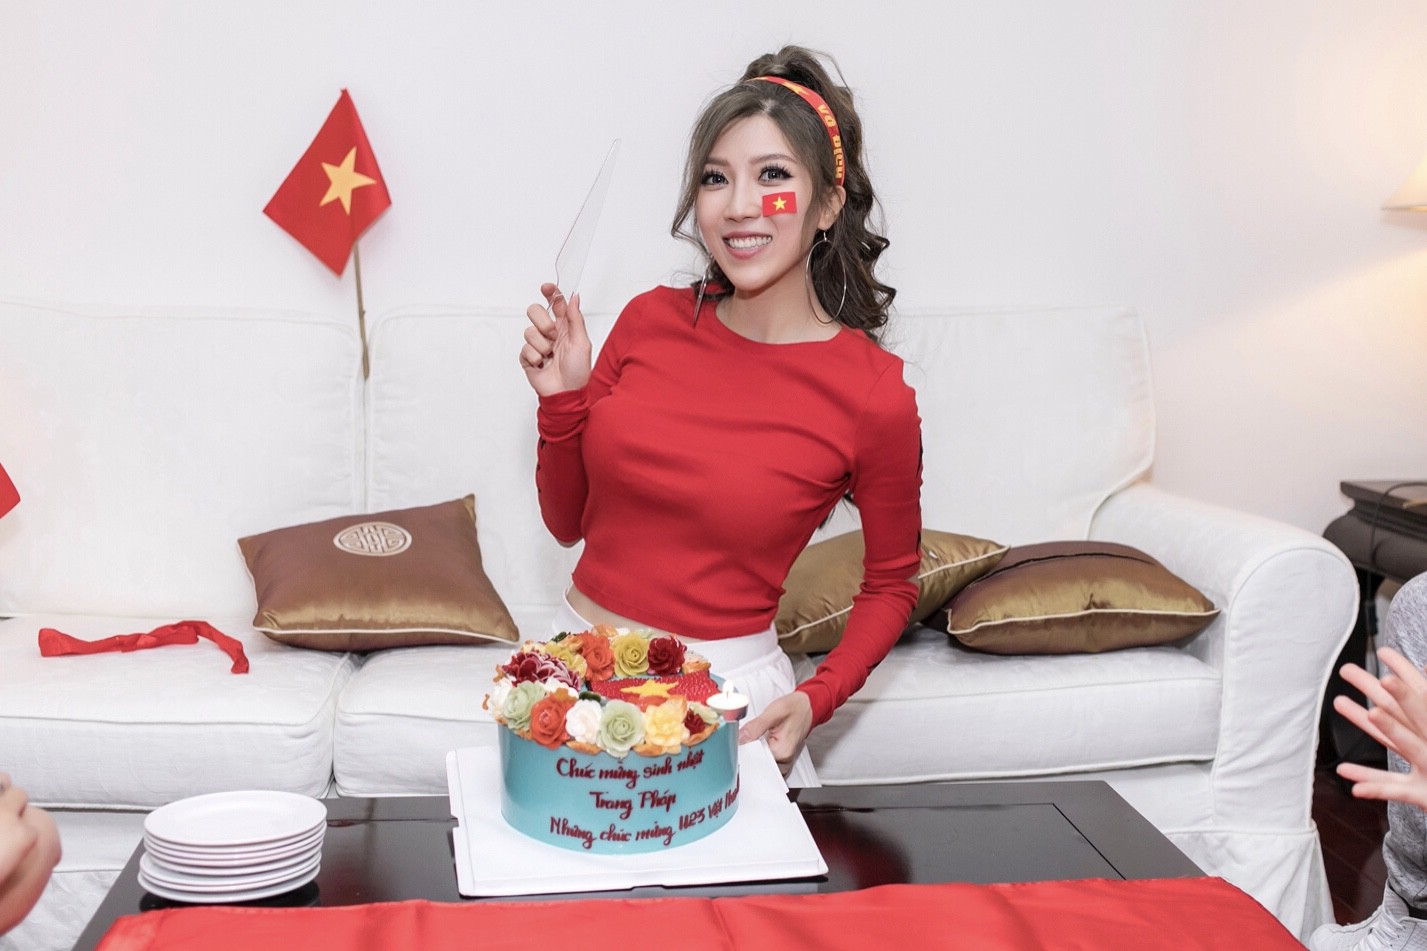 Cuồng nhiệt như Trang Pháp: Tổ chức sinh nhật kết hợp cổ vũ U23 Việt Nam - Ảnh 1.